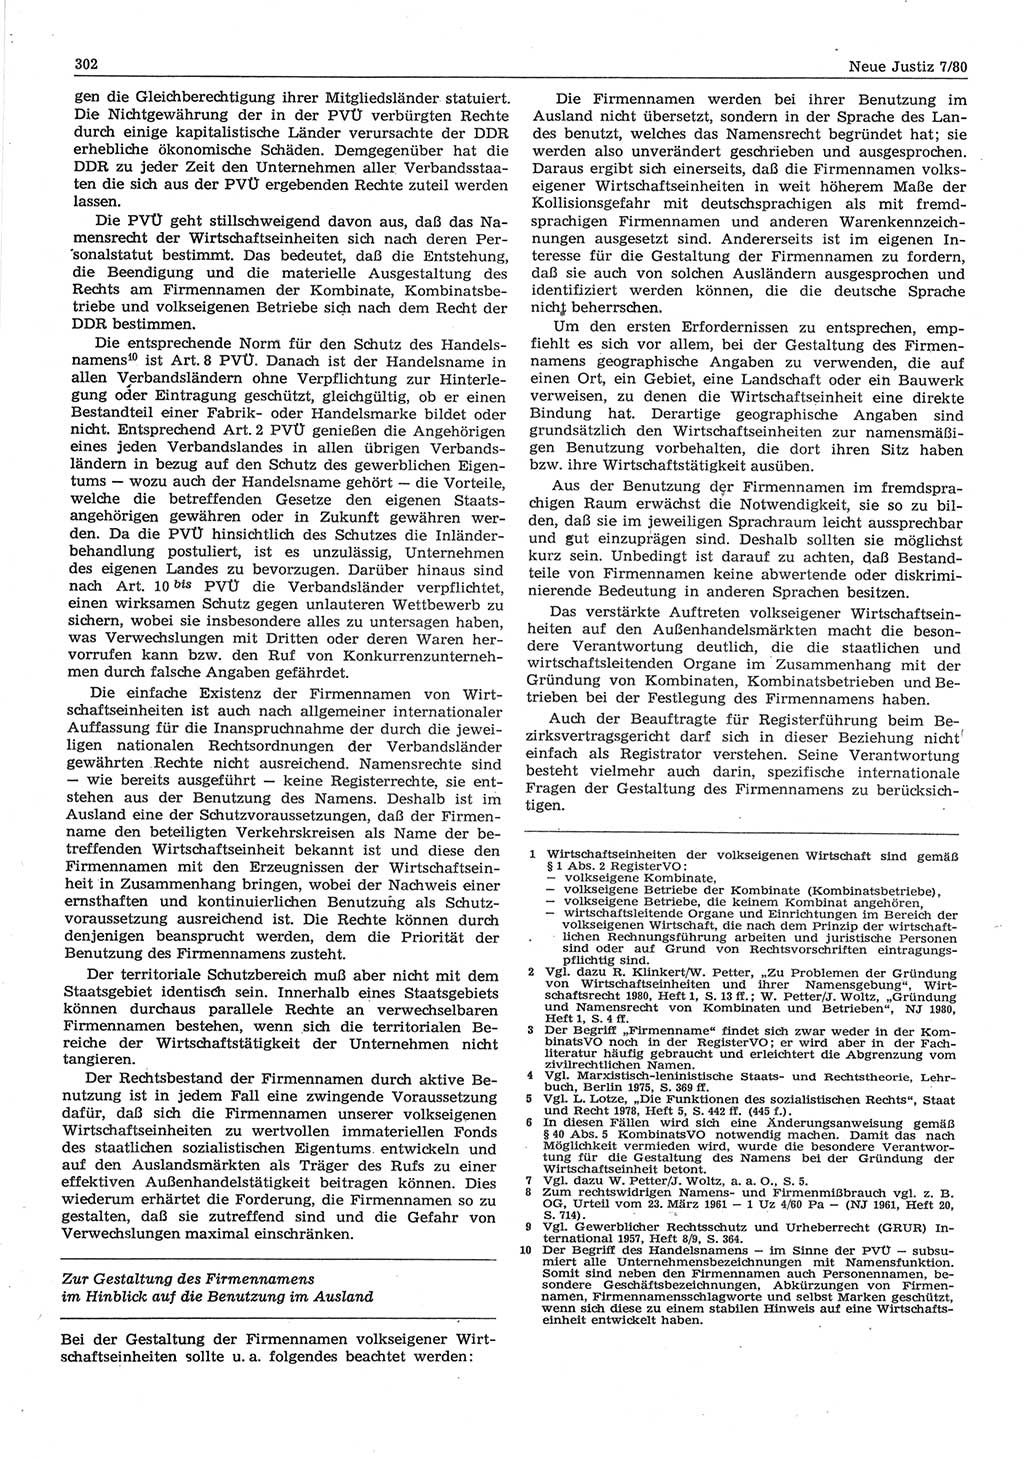 Neue Justiz (NJ), Zeitschrift für sozialistisches Recht und Gesetzlichkeit [Deutsche Demokratische Republik (DDR)], 34. Jahrgang 1980, Seite 302 (NJ DDR 1980, S. 302)